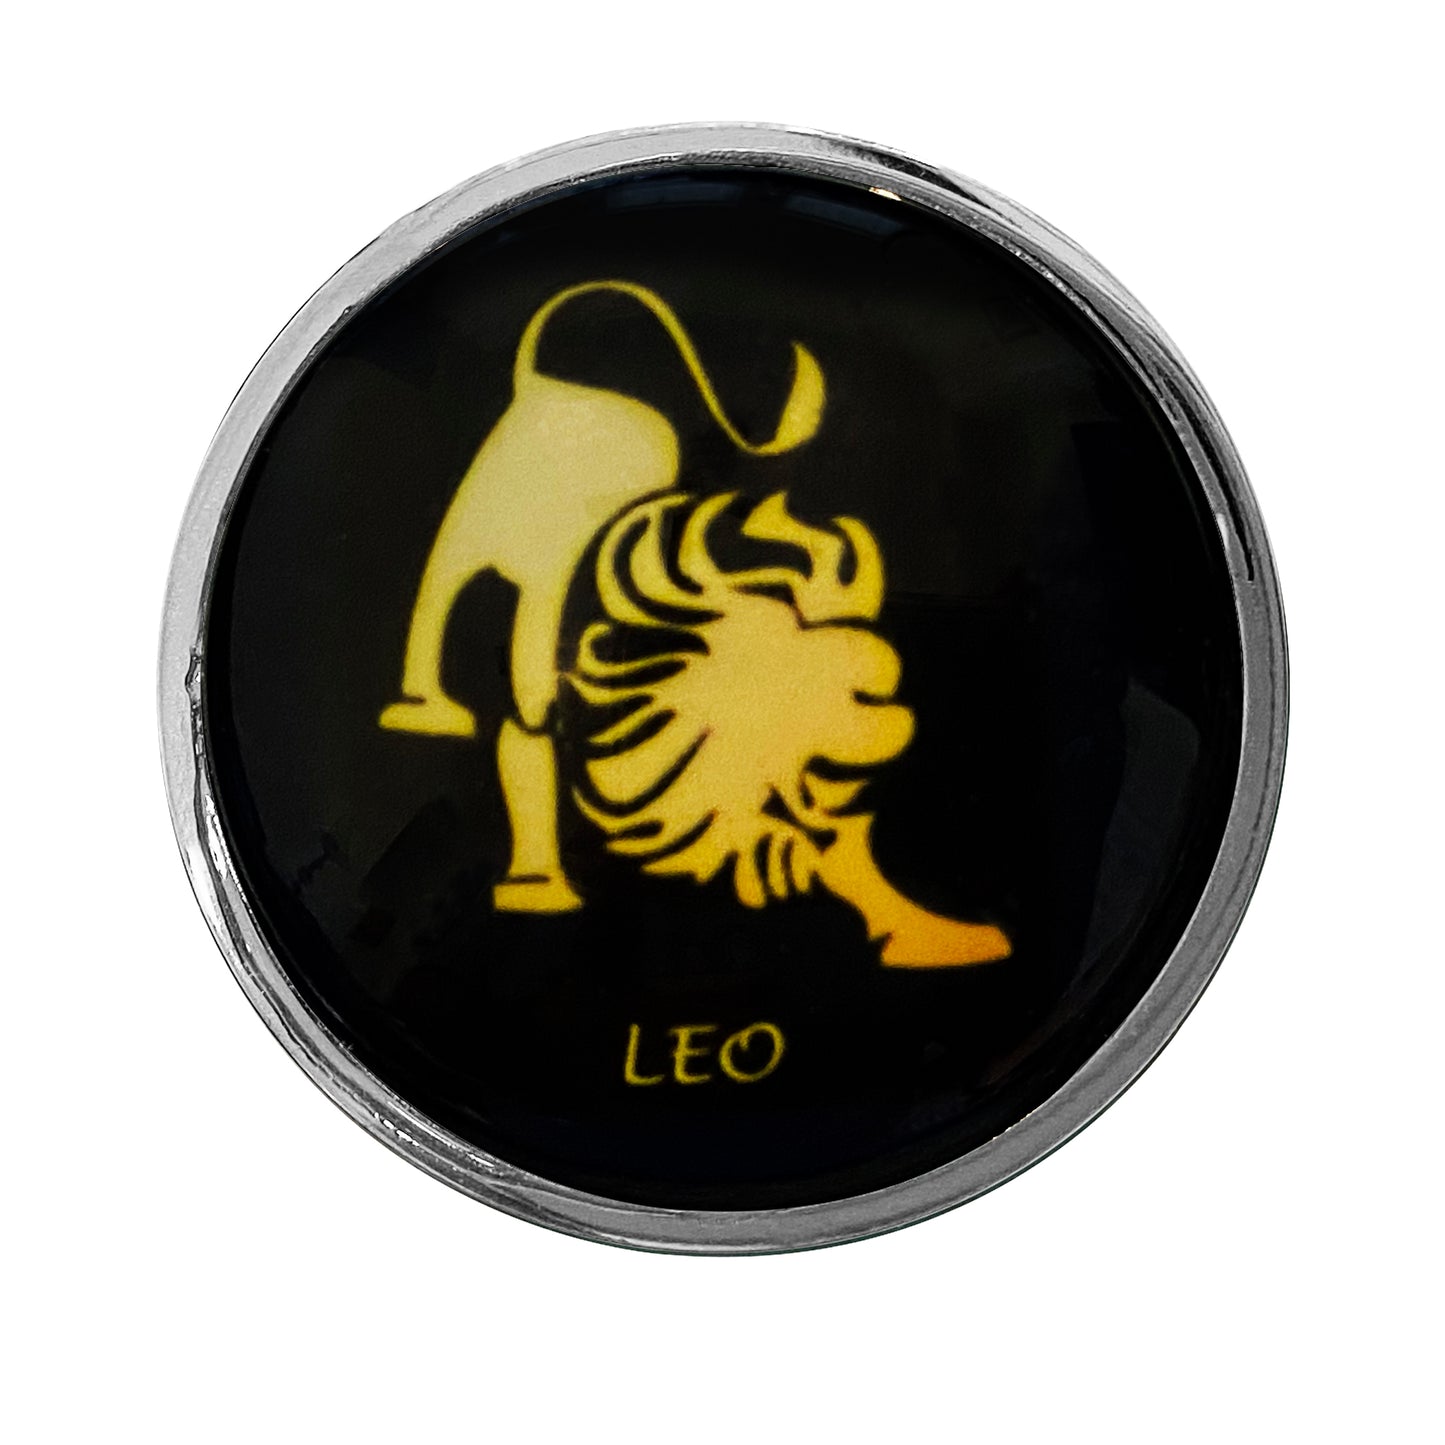 Zodiac Stainless Butt Plug, Leo